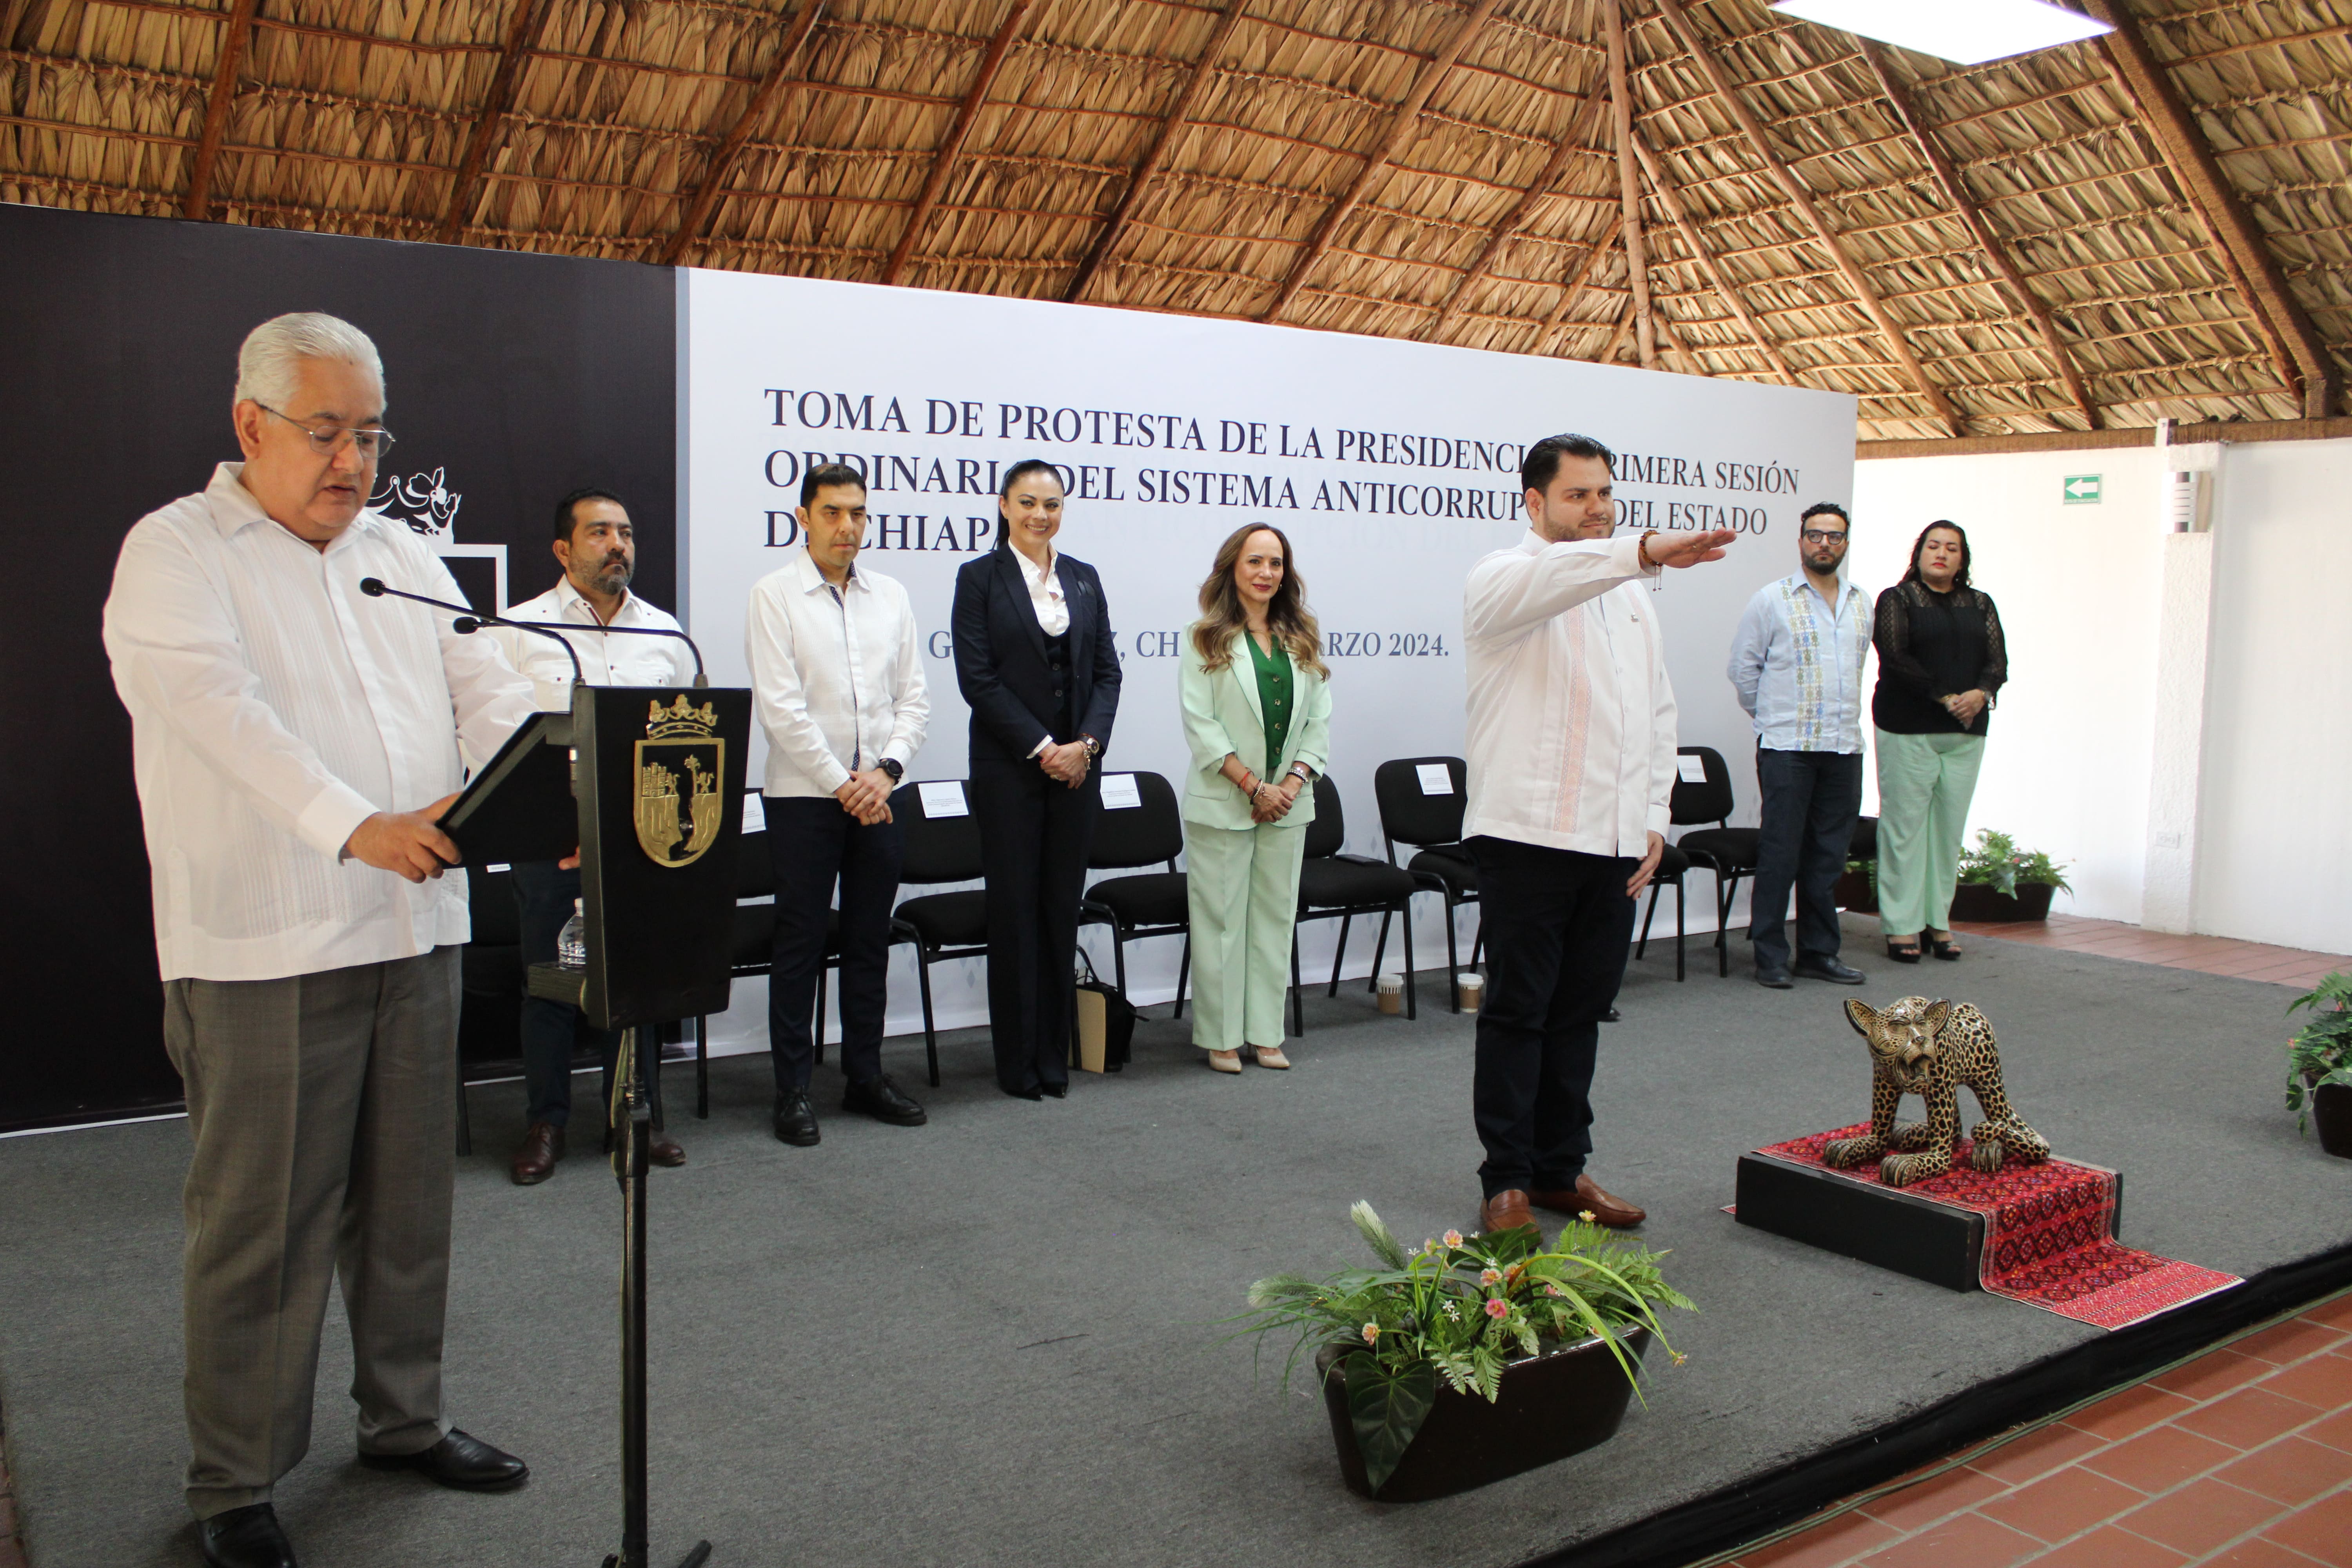 Chiapas da un paso firme contra la corrupción: Nueva Presidencia asume el desafío de la ética y la integridad